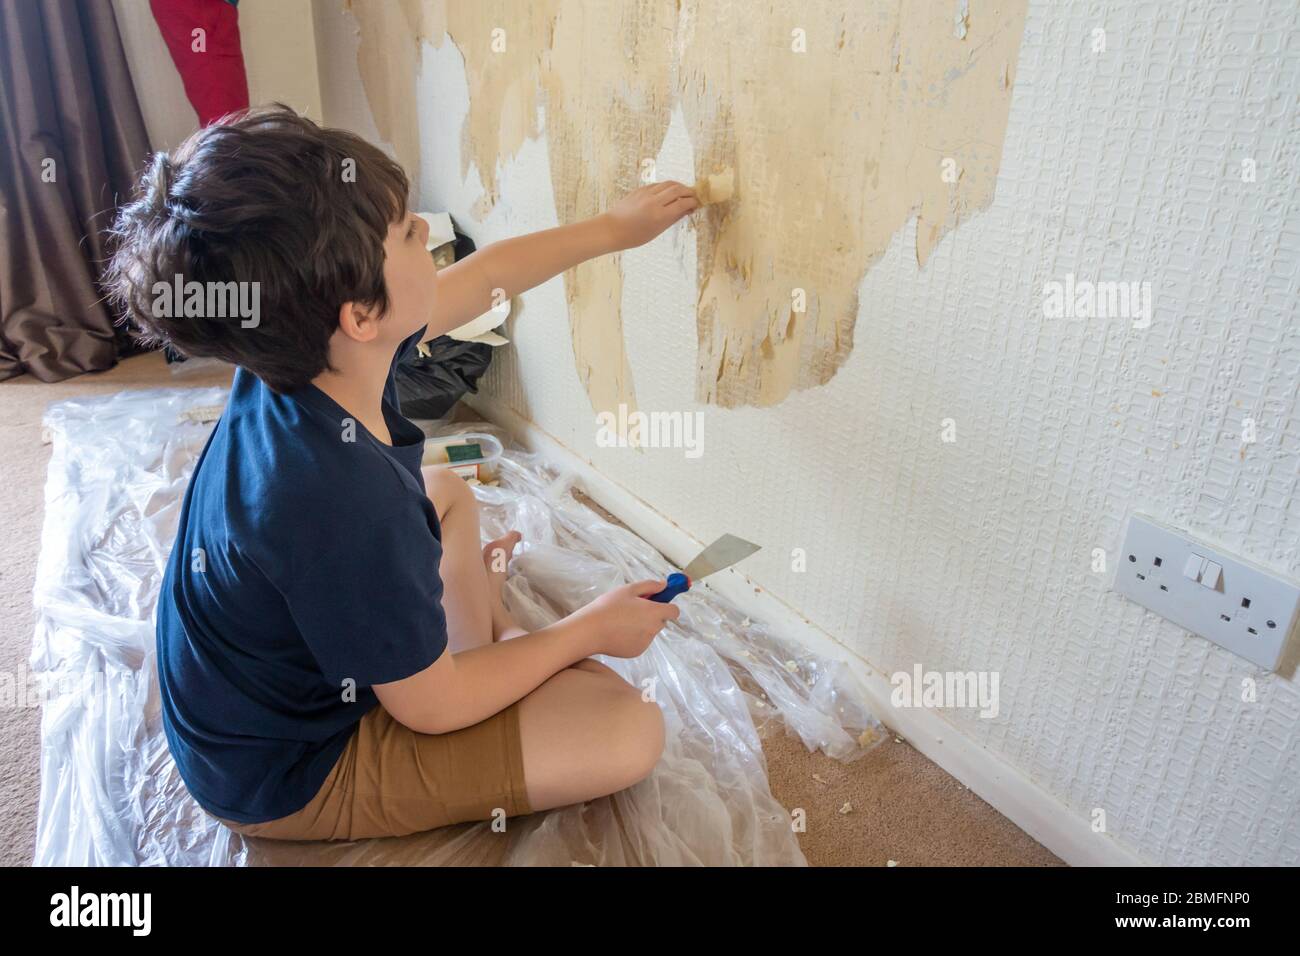 Un niño ayuda a quitar el papel pintado viejo de una pared como la primera etapa de redecorar una habitación. Foto de stock